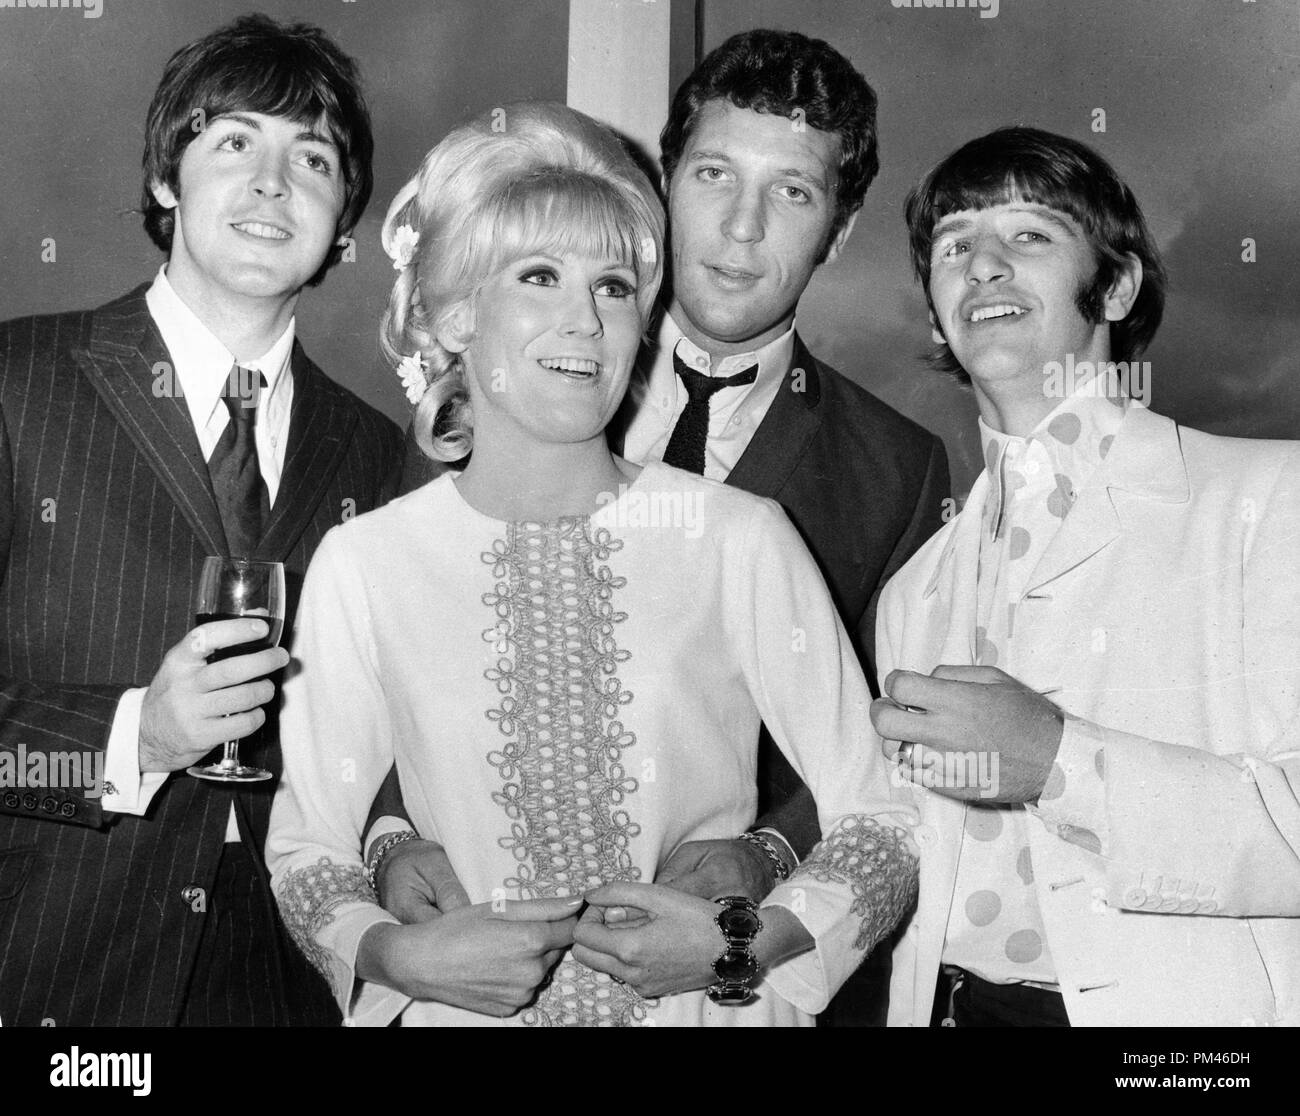 Tom Jones avec Beatles, Paul McCartney, Ringo Starr et la chanteuse Dusty Springfield, septembre13,1966. Référence # 1063 015THA © CCR /Le Hollywood Archive - Tous droits réservés. Banque D'Images